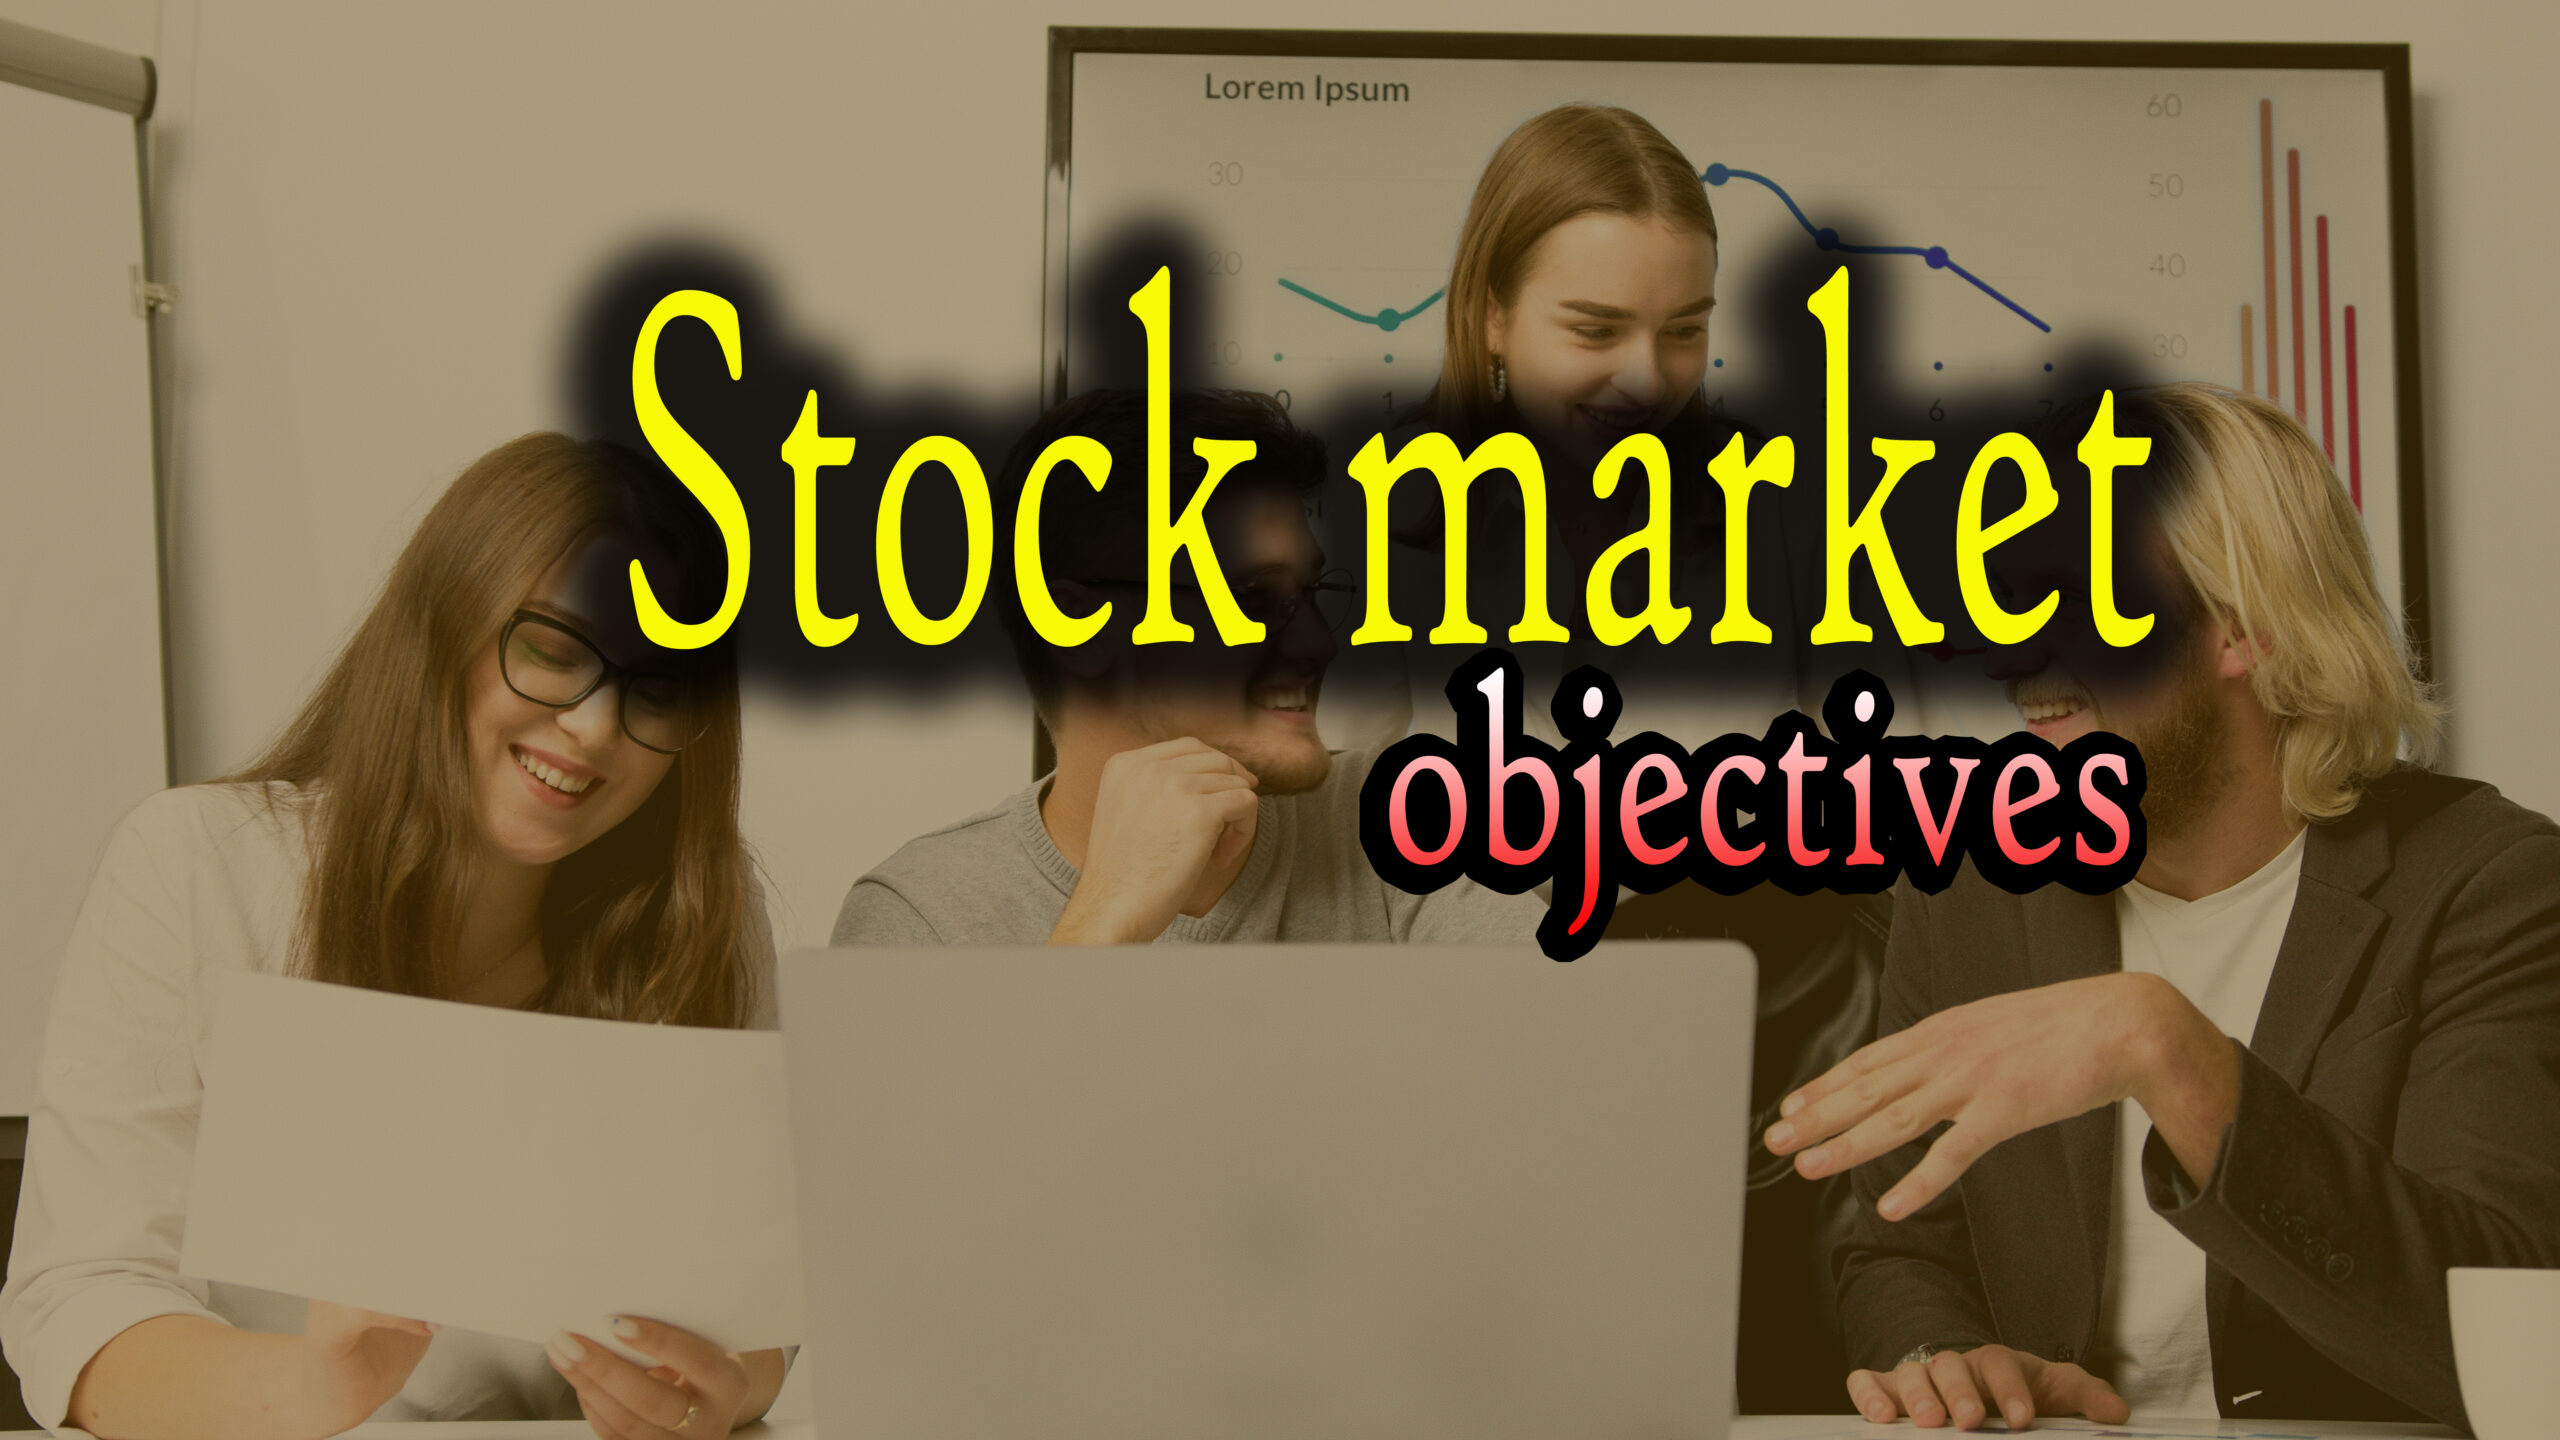 Stock market objectives